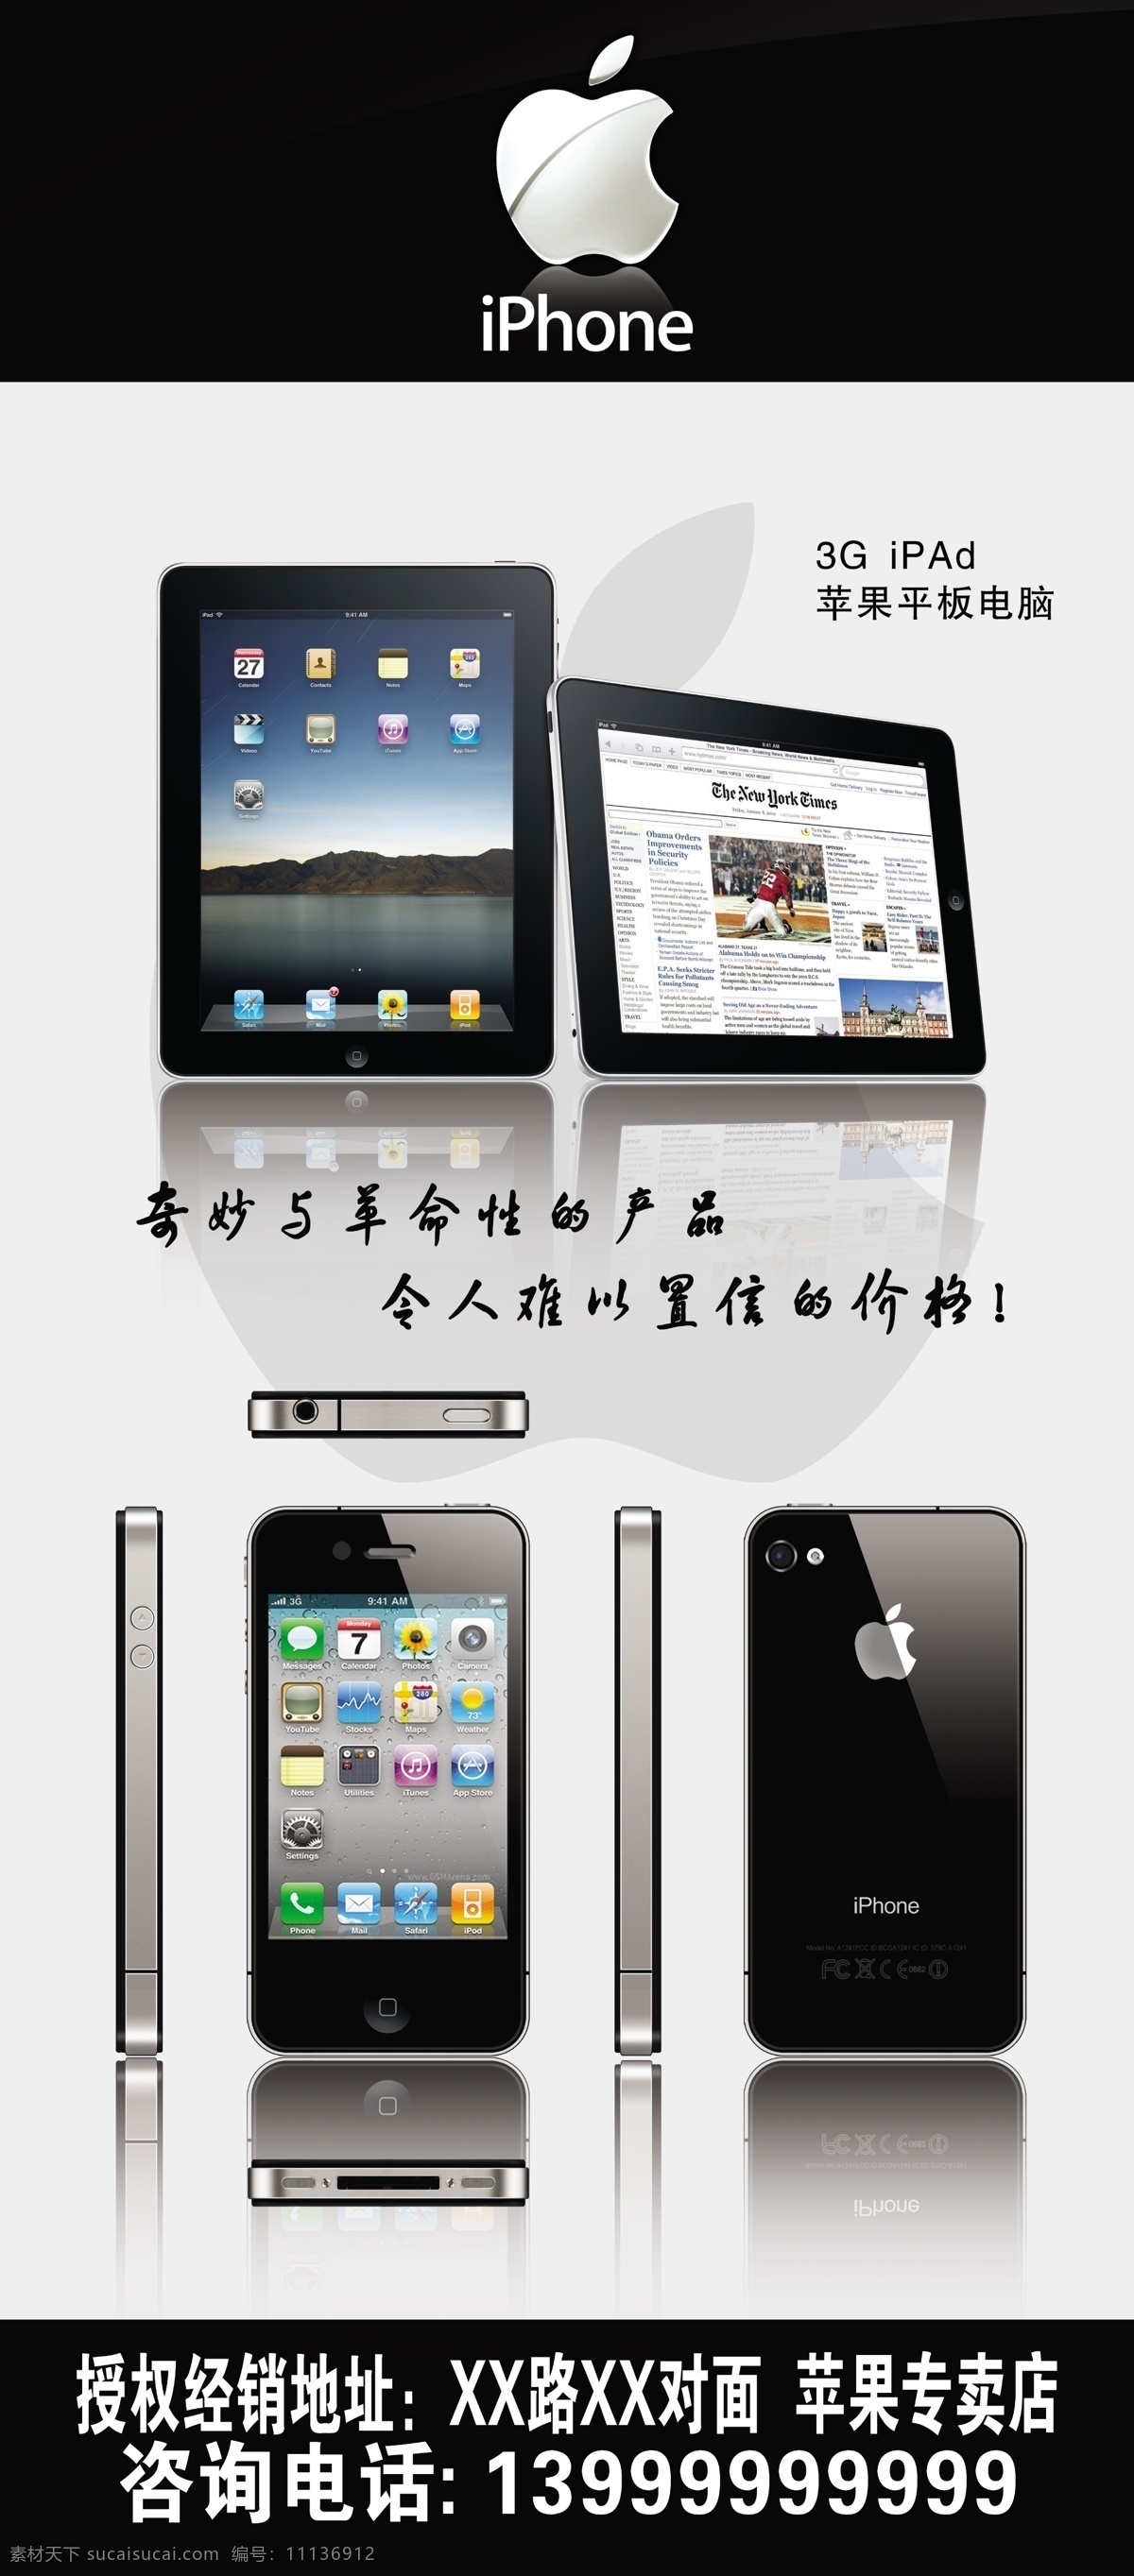 苹果 专卖店 宣传海报 矢量 ipad iphone 电子产品广告 平板电脑 苹果标志 苹果手机 苹果专卖店 其他海报设计